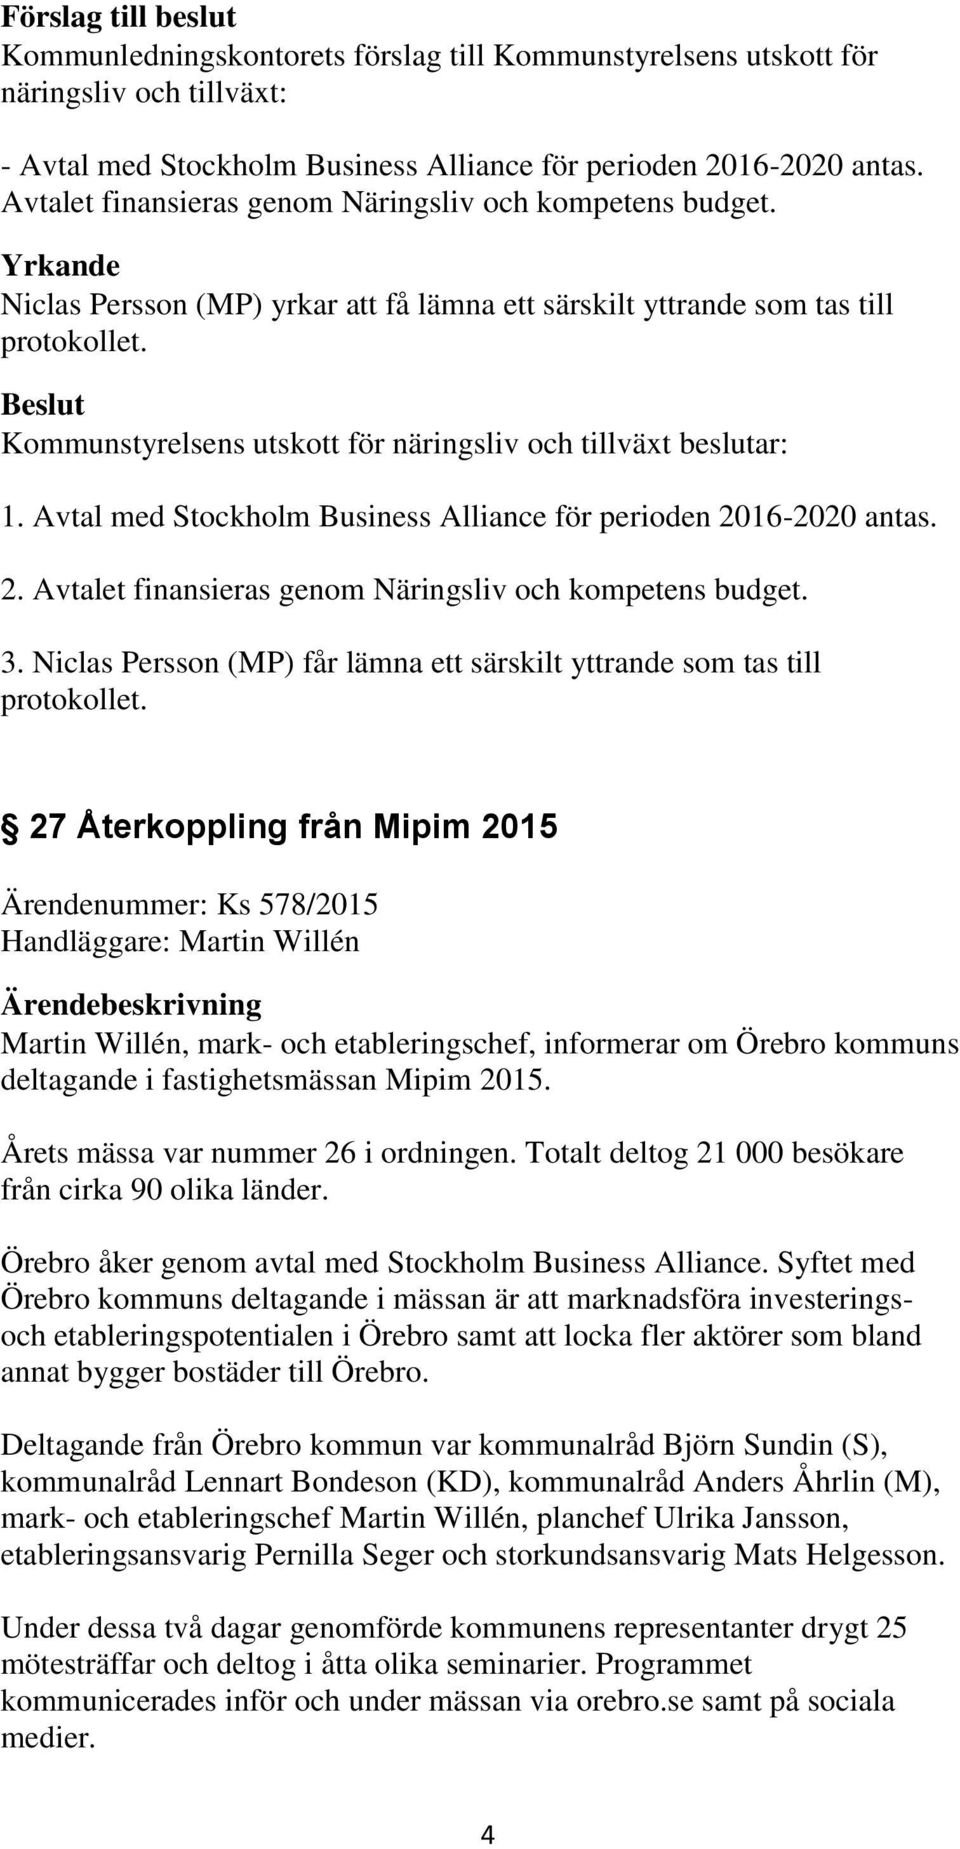 Avtal med Stockholm Business Alliance för perioden 2016-2020 antas. 2. Avtalet finansieras genom Näringsliv och kompetens budget. 3.